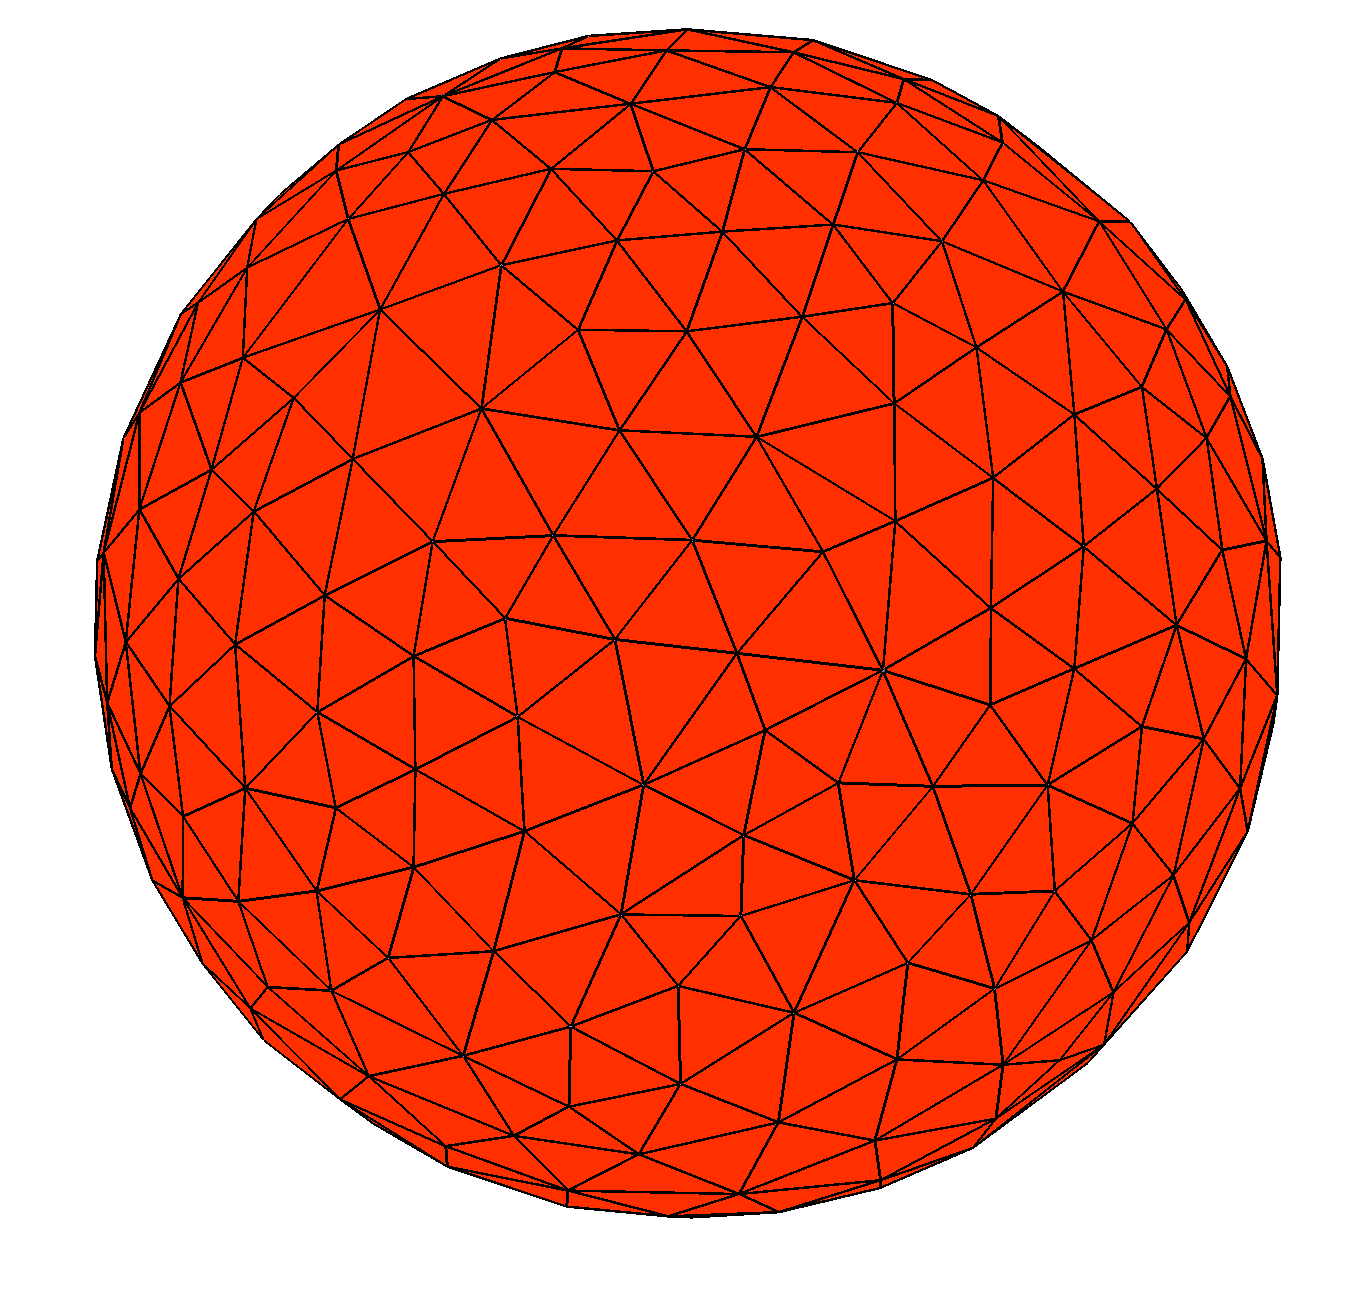 Sphere_1675 mesh image